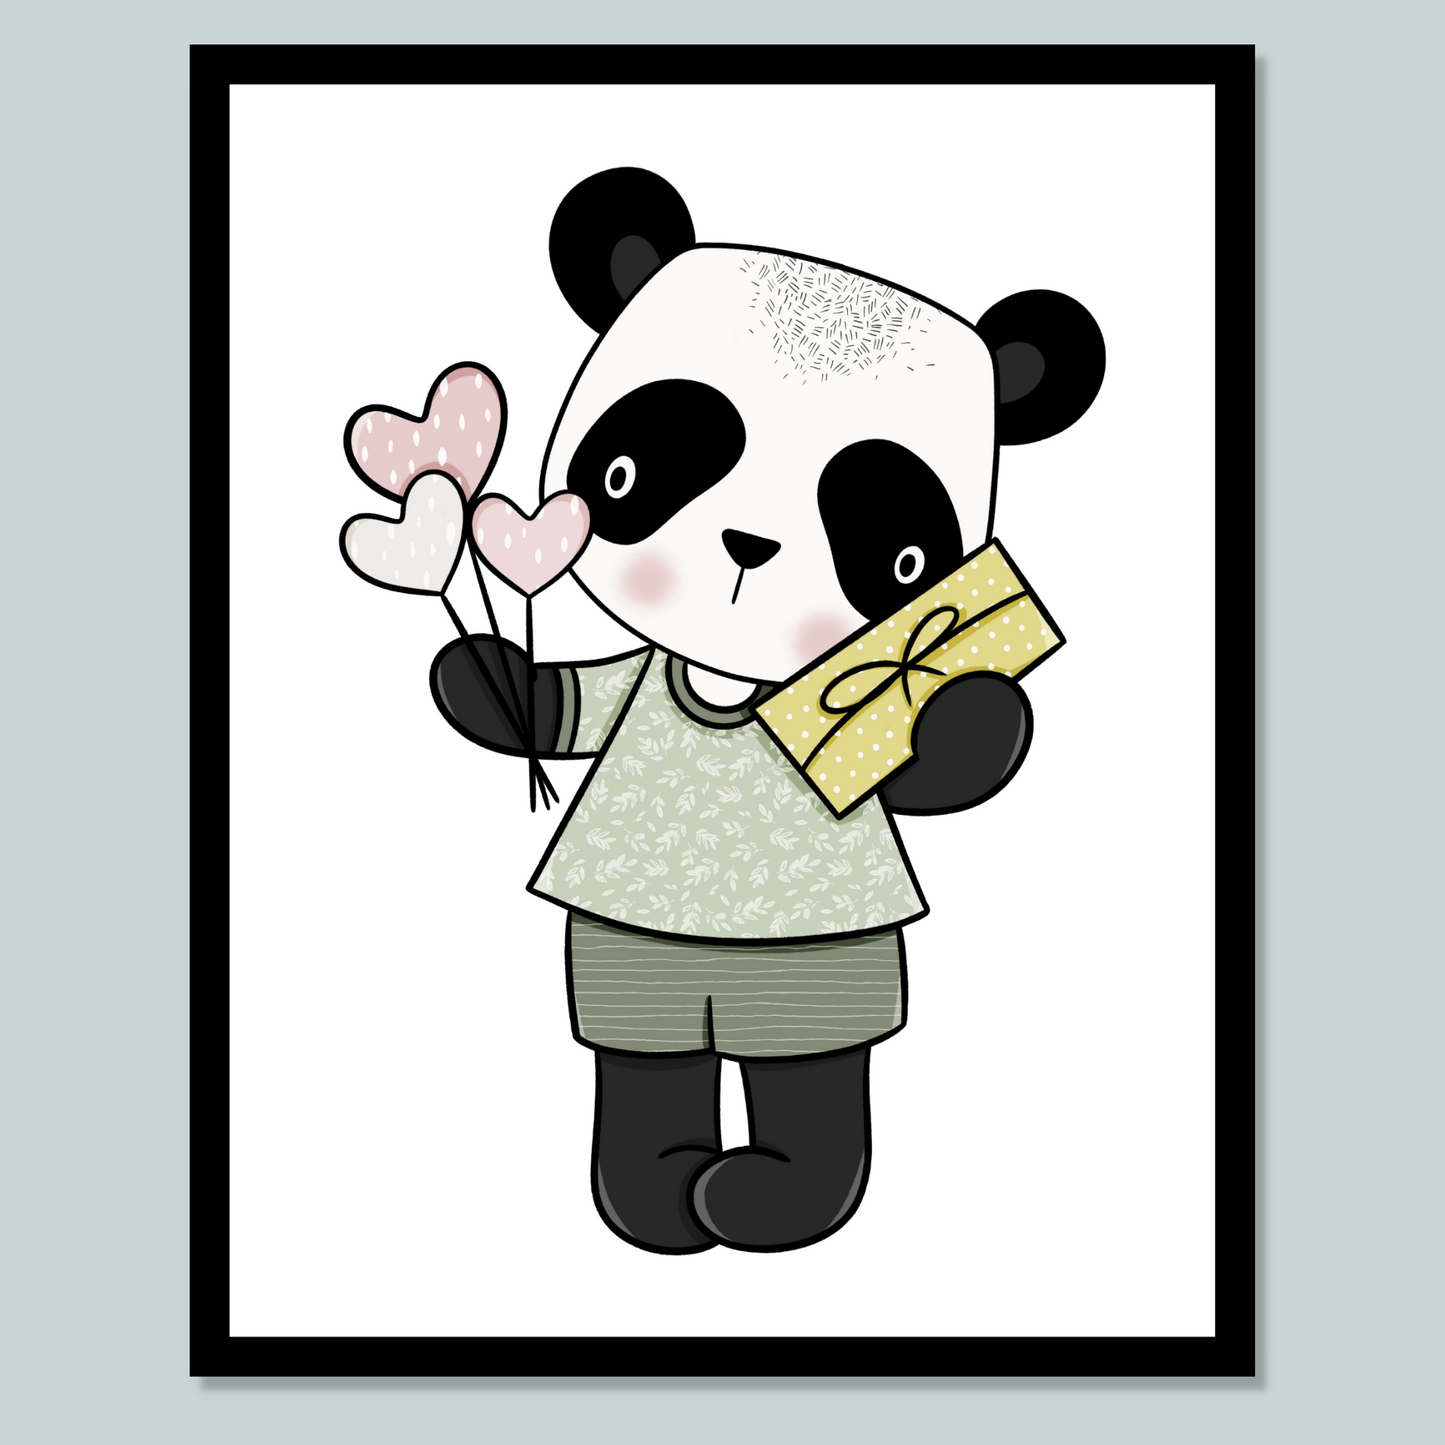 Grafisk illustrasjon av en panda-gutt. Han har på grønn shorts med hvite striper og lysegrønn genser med hvite blomster. Han holder en gul pakke og hjerteballonger i hendene.